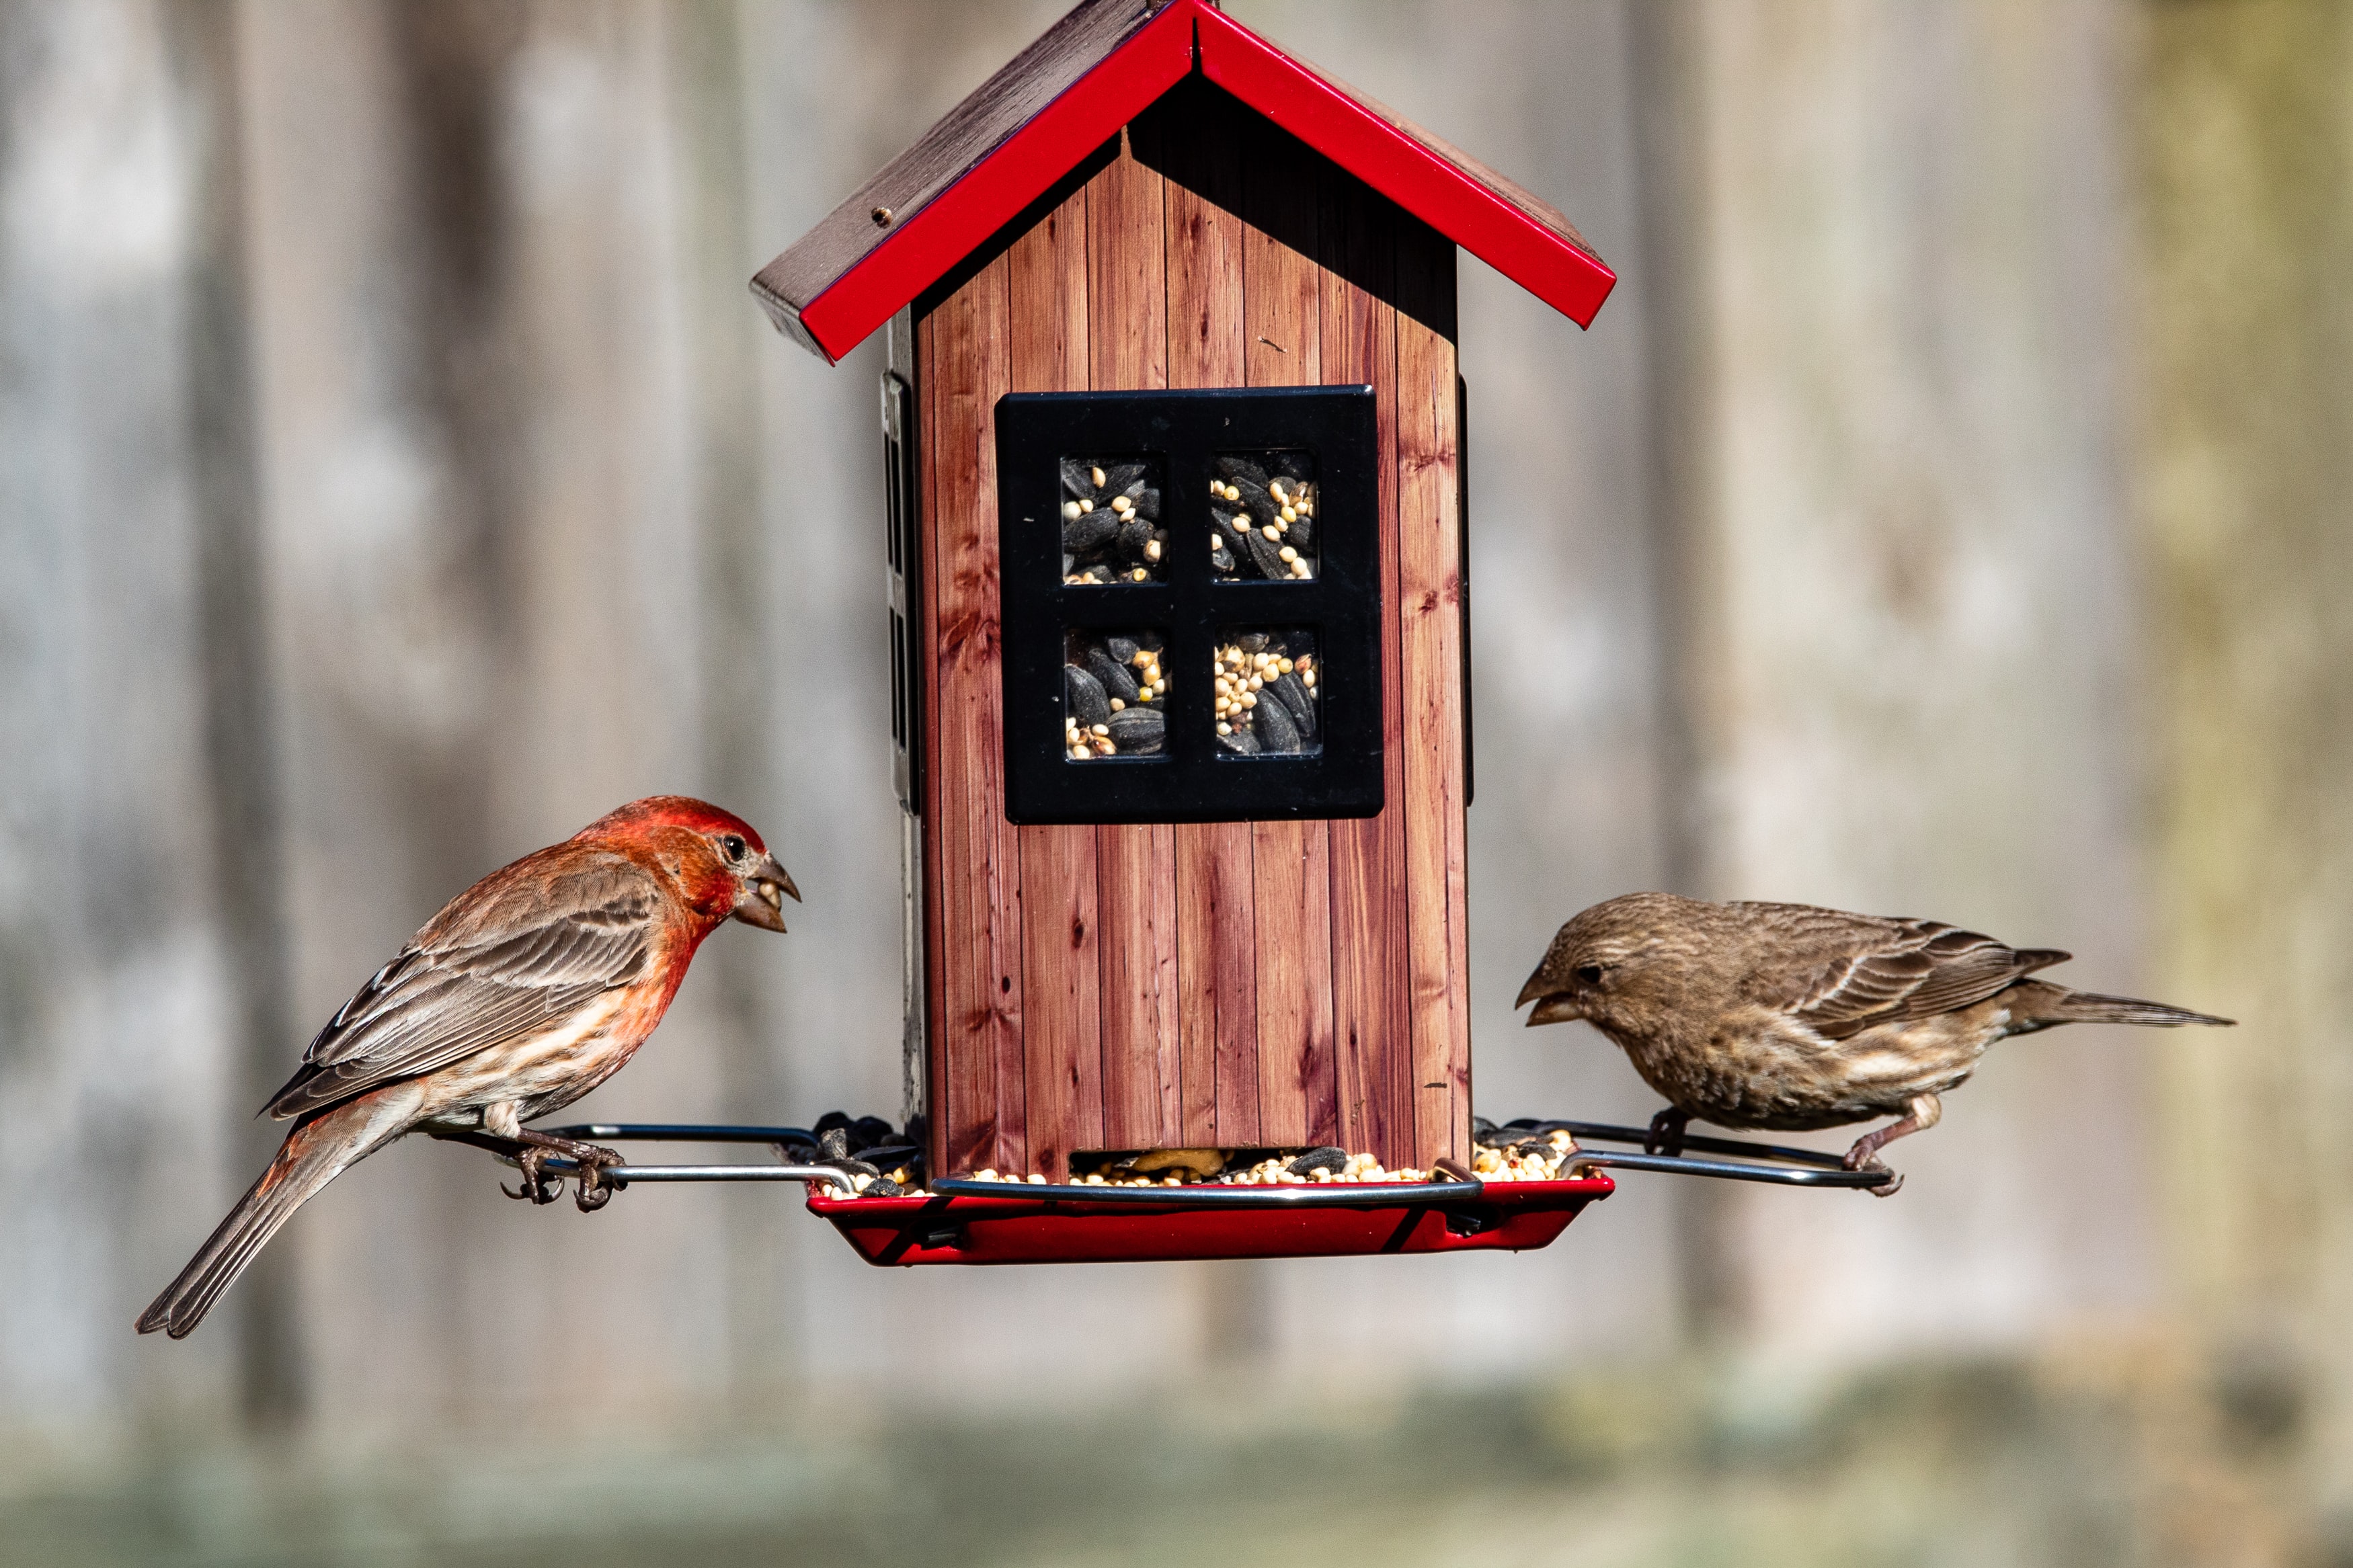 Инструкция: как помочь птицам пережить зиму